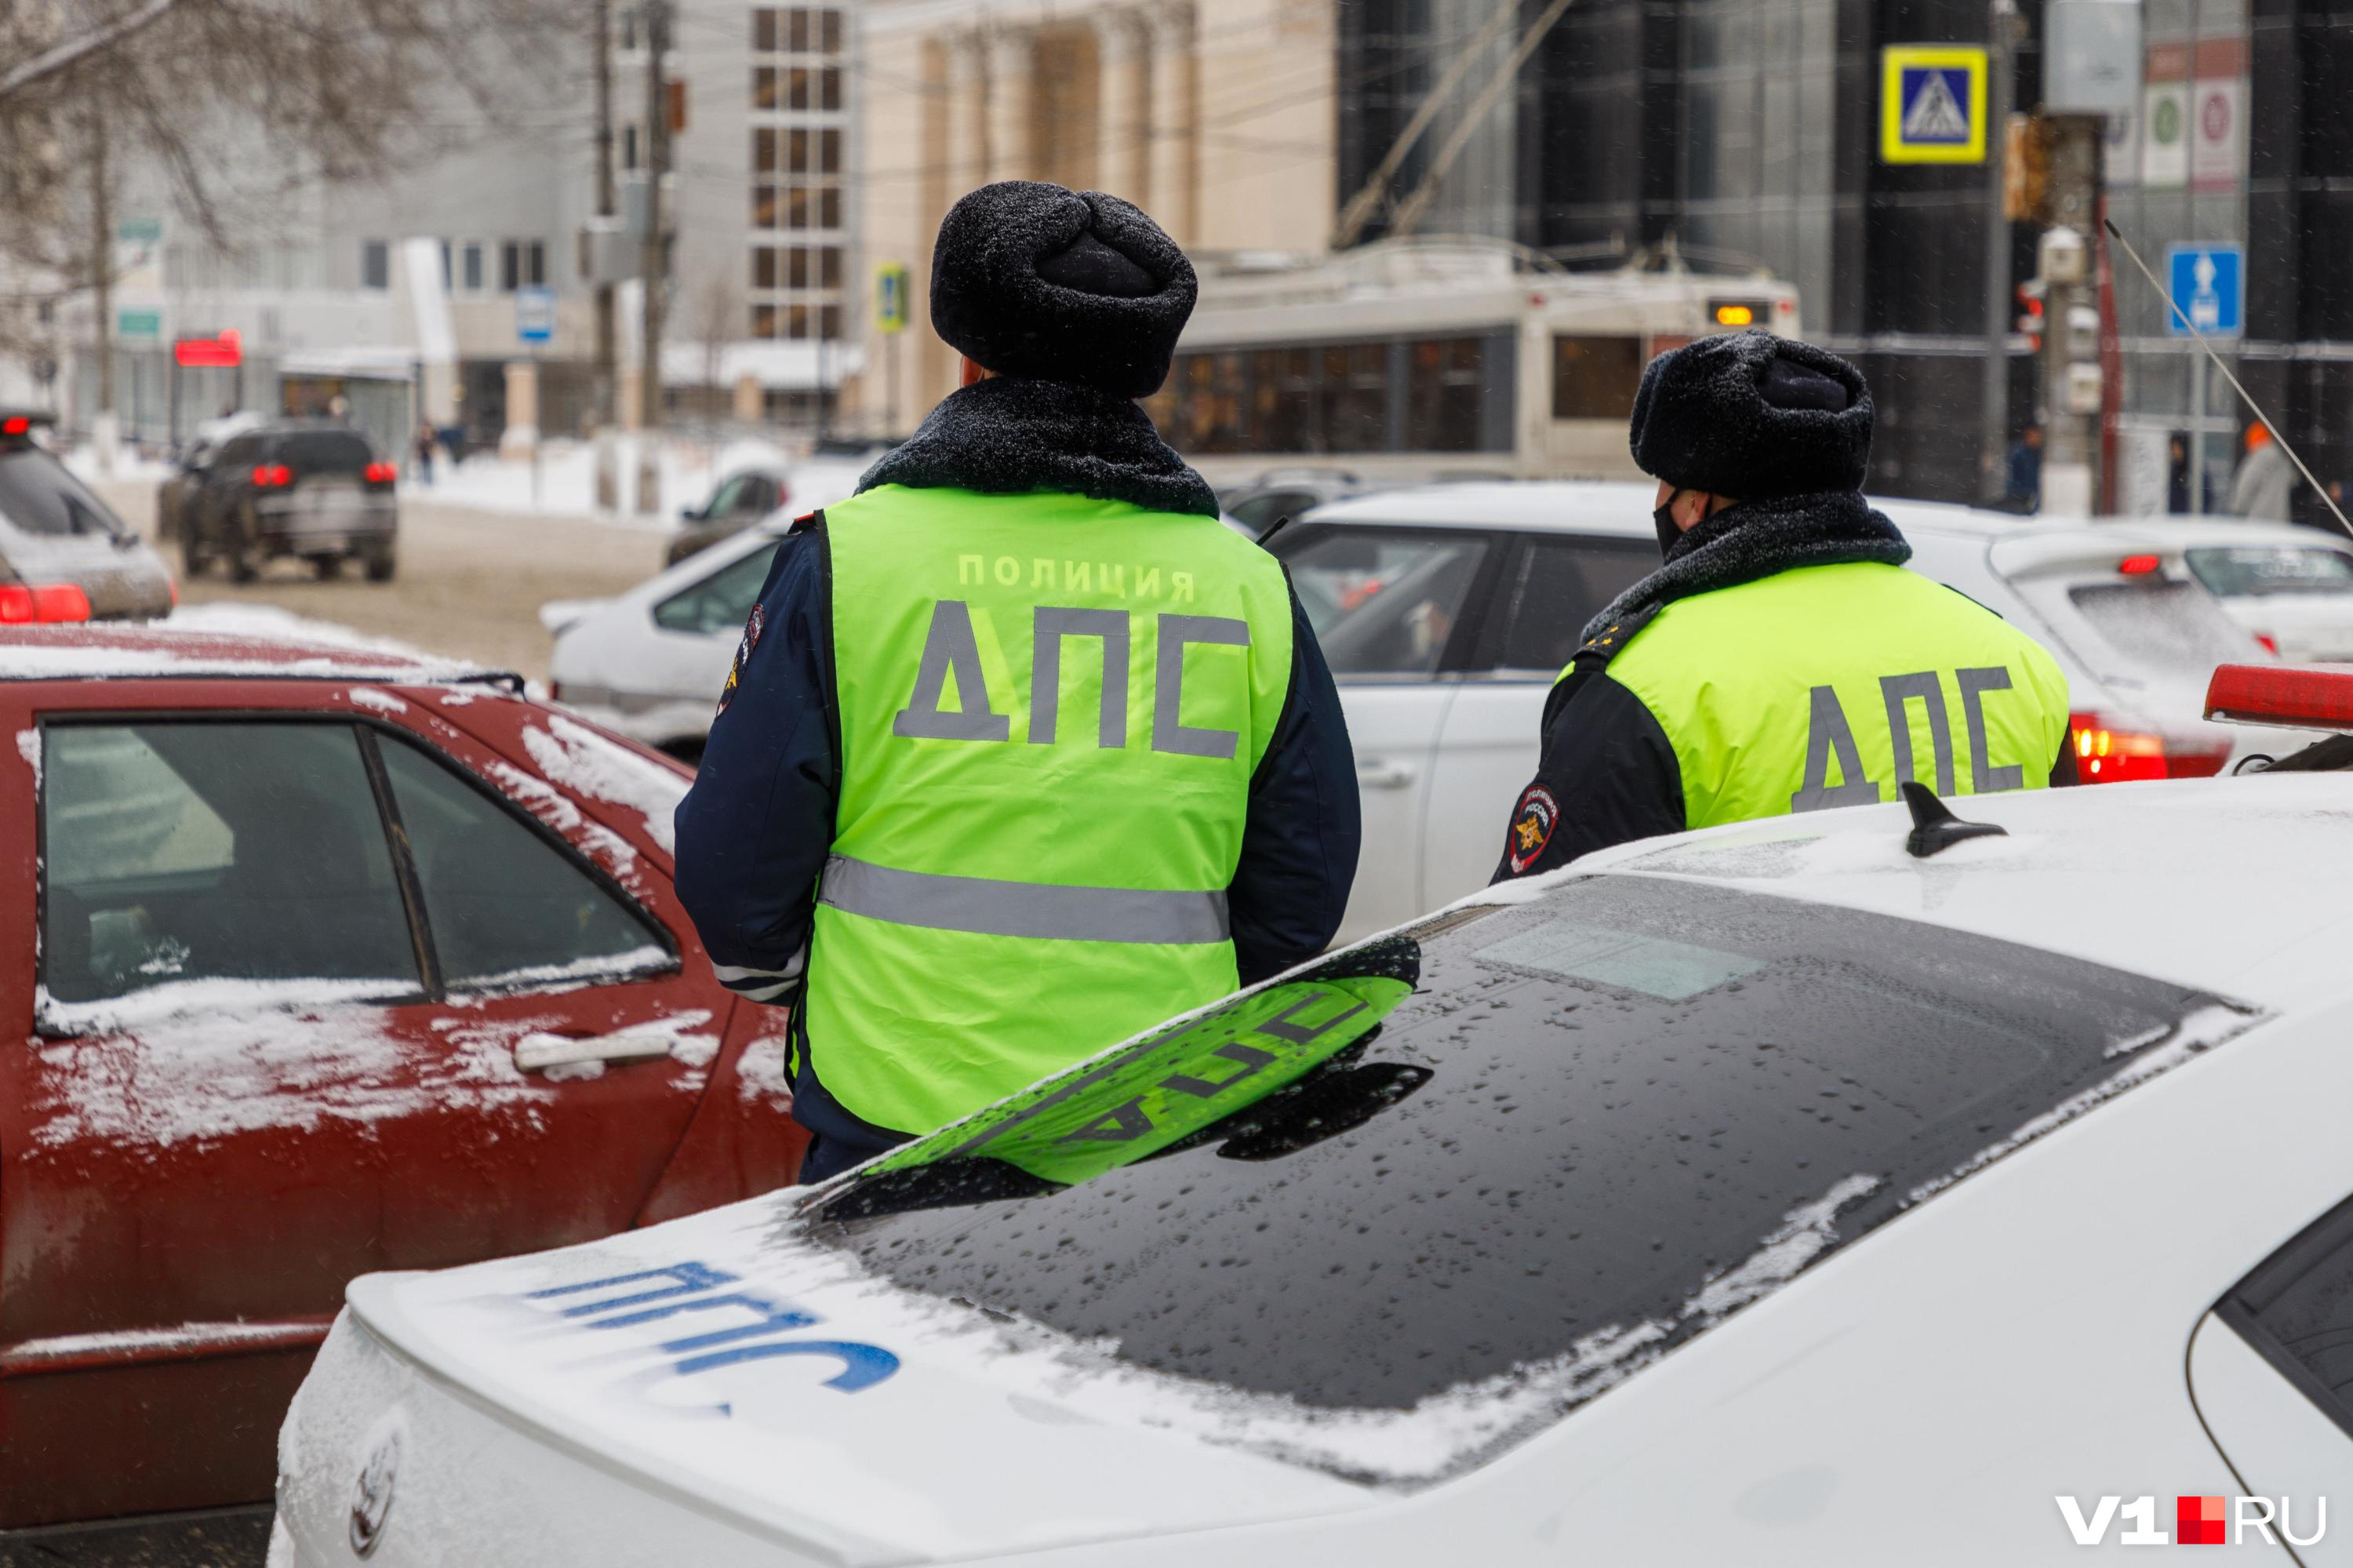 Экс-инспекторов ДПС осудили в Новосибирске. Они получили условные сроки за «помощь» соседу